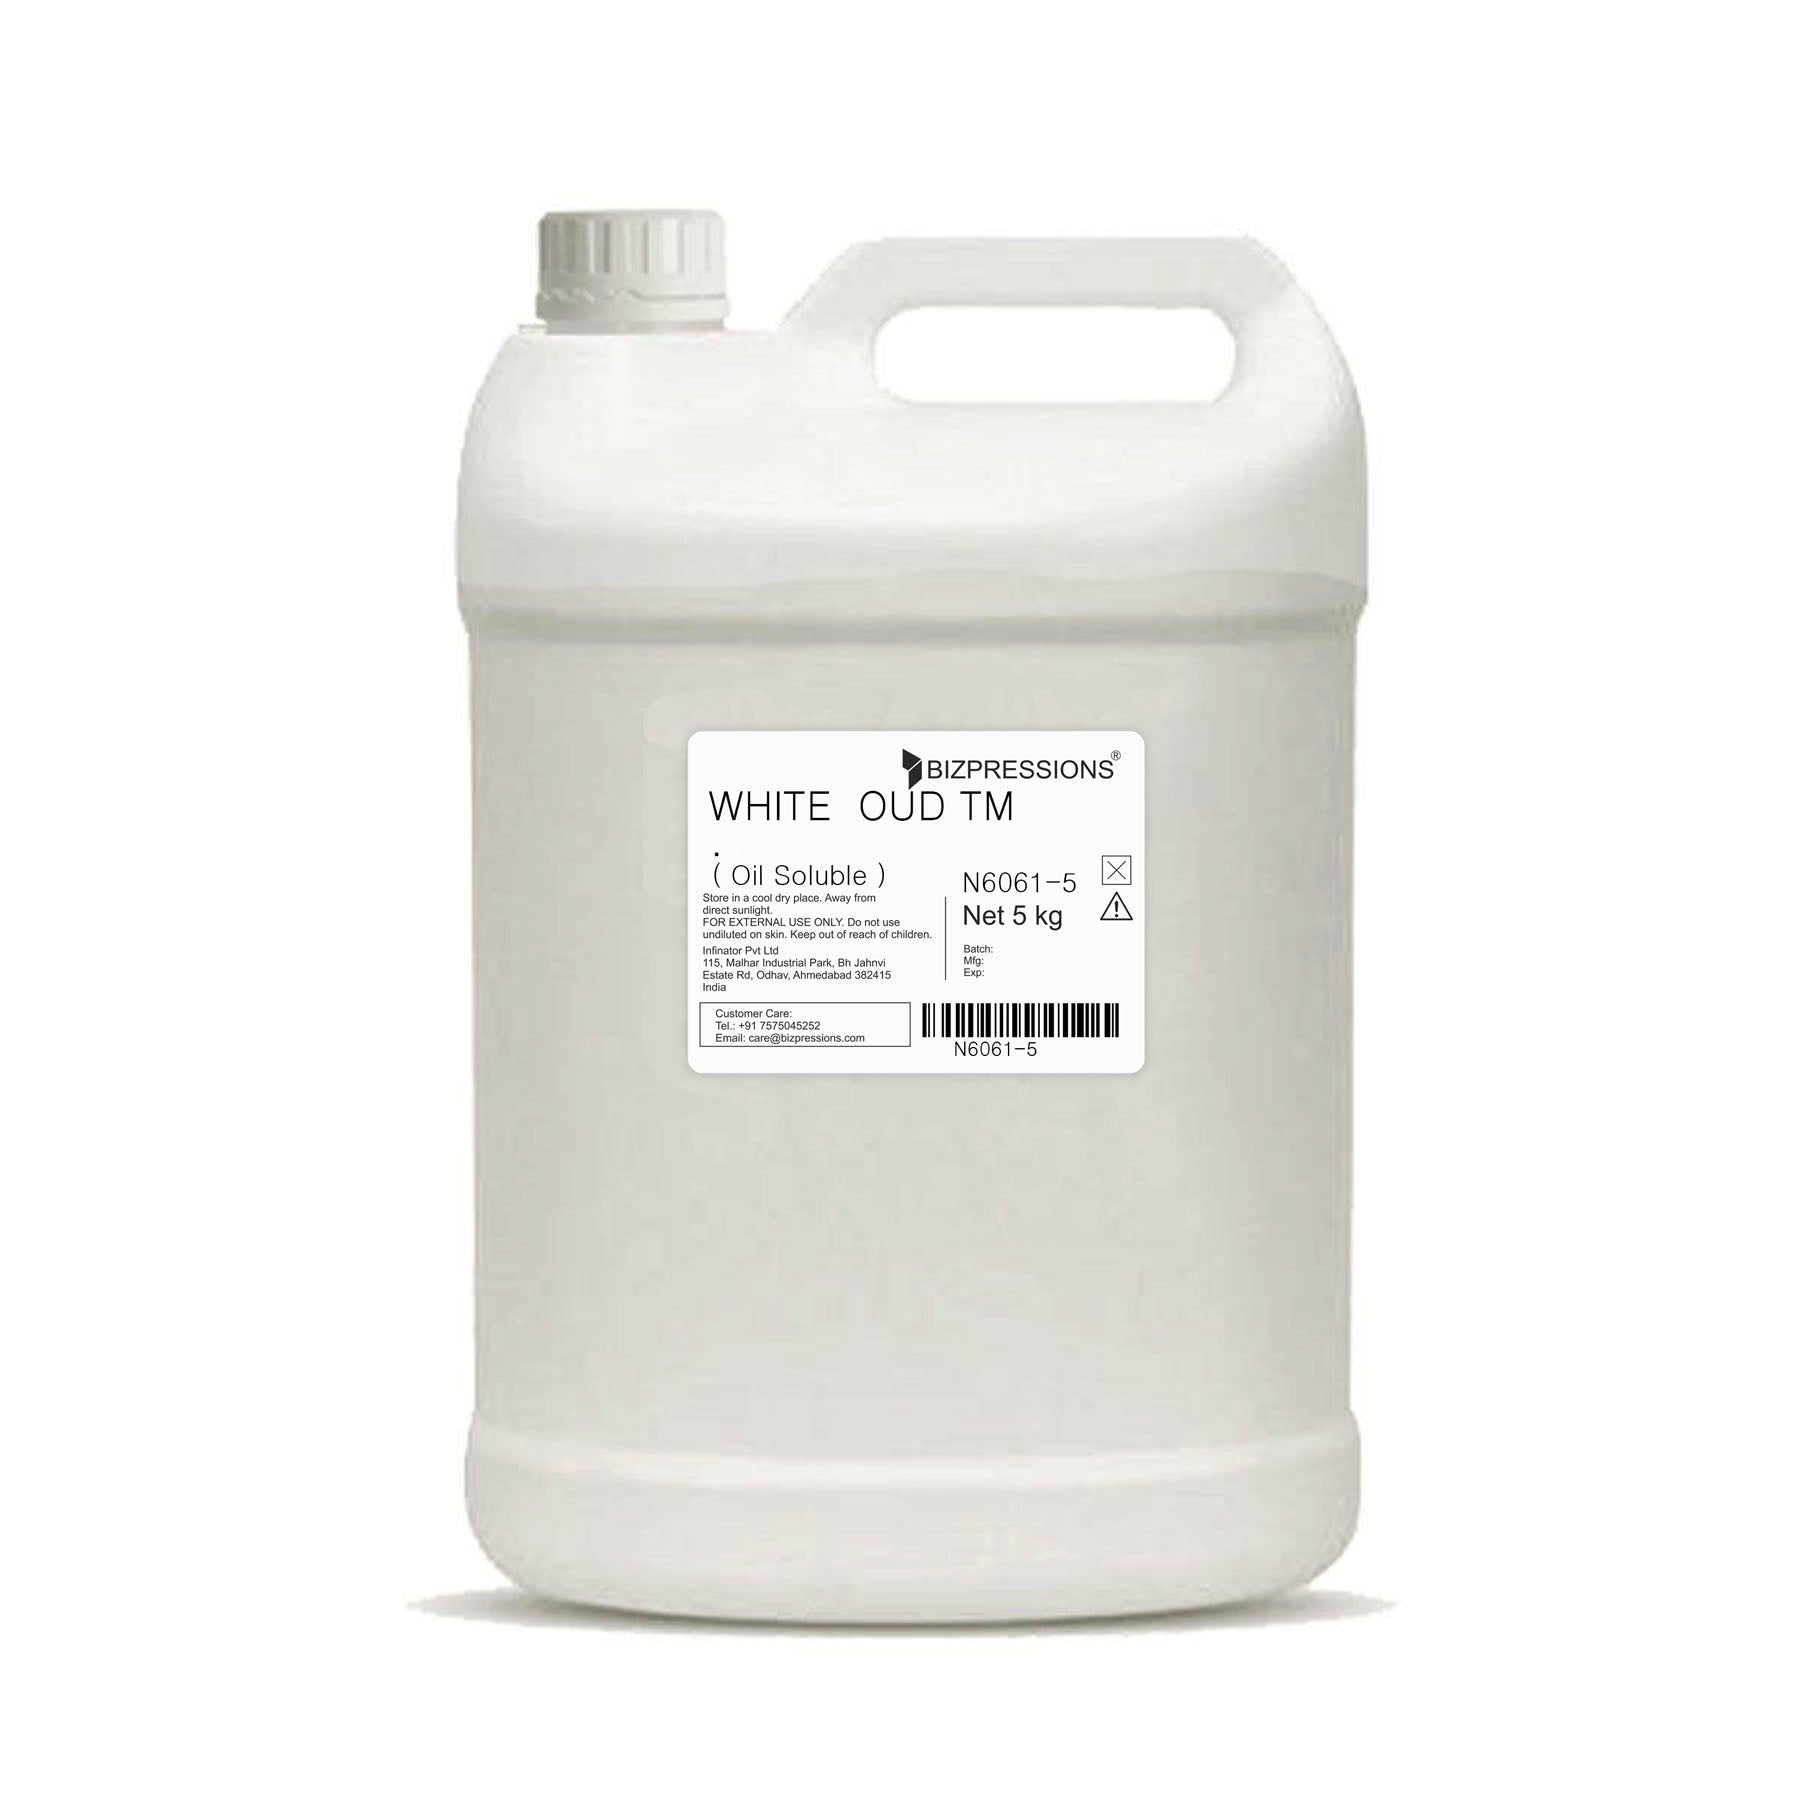 WHITE OUD TM - Fragrance ( Oil Soluble ) - 5 kg